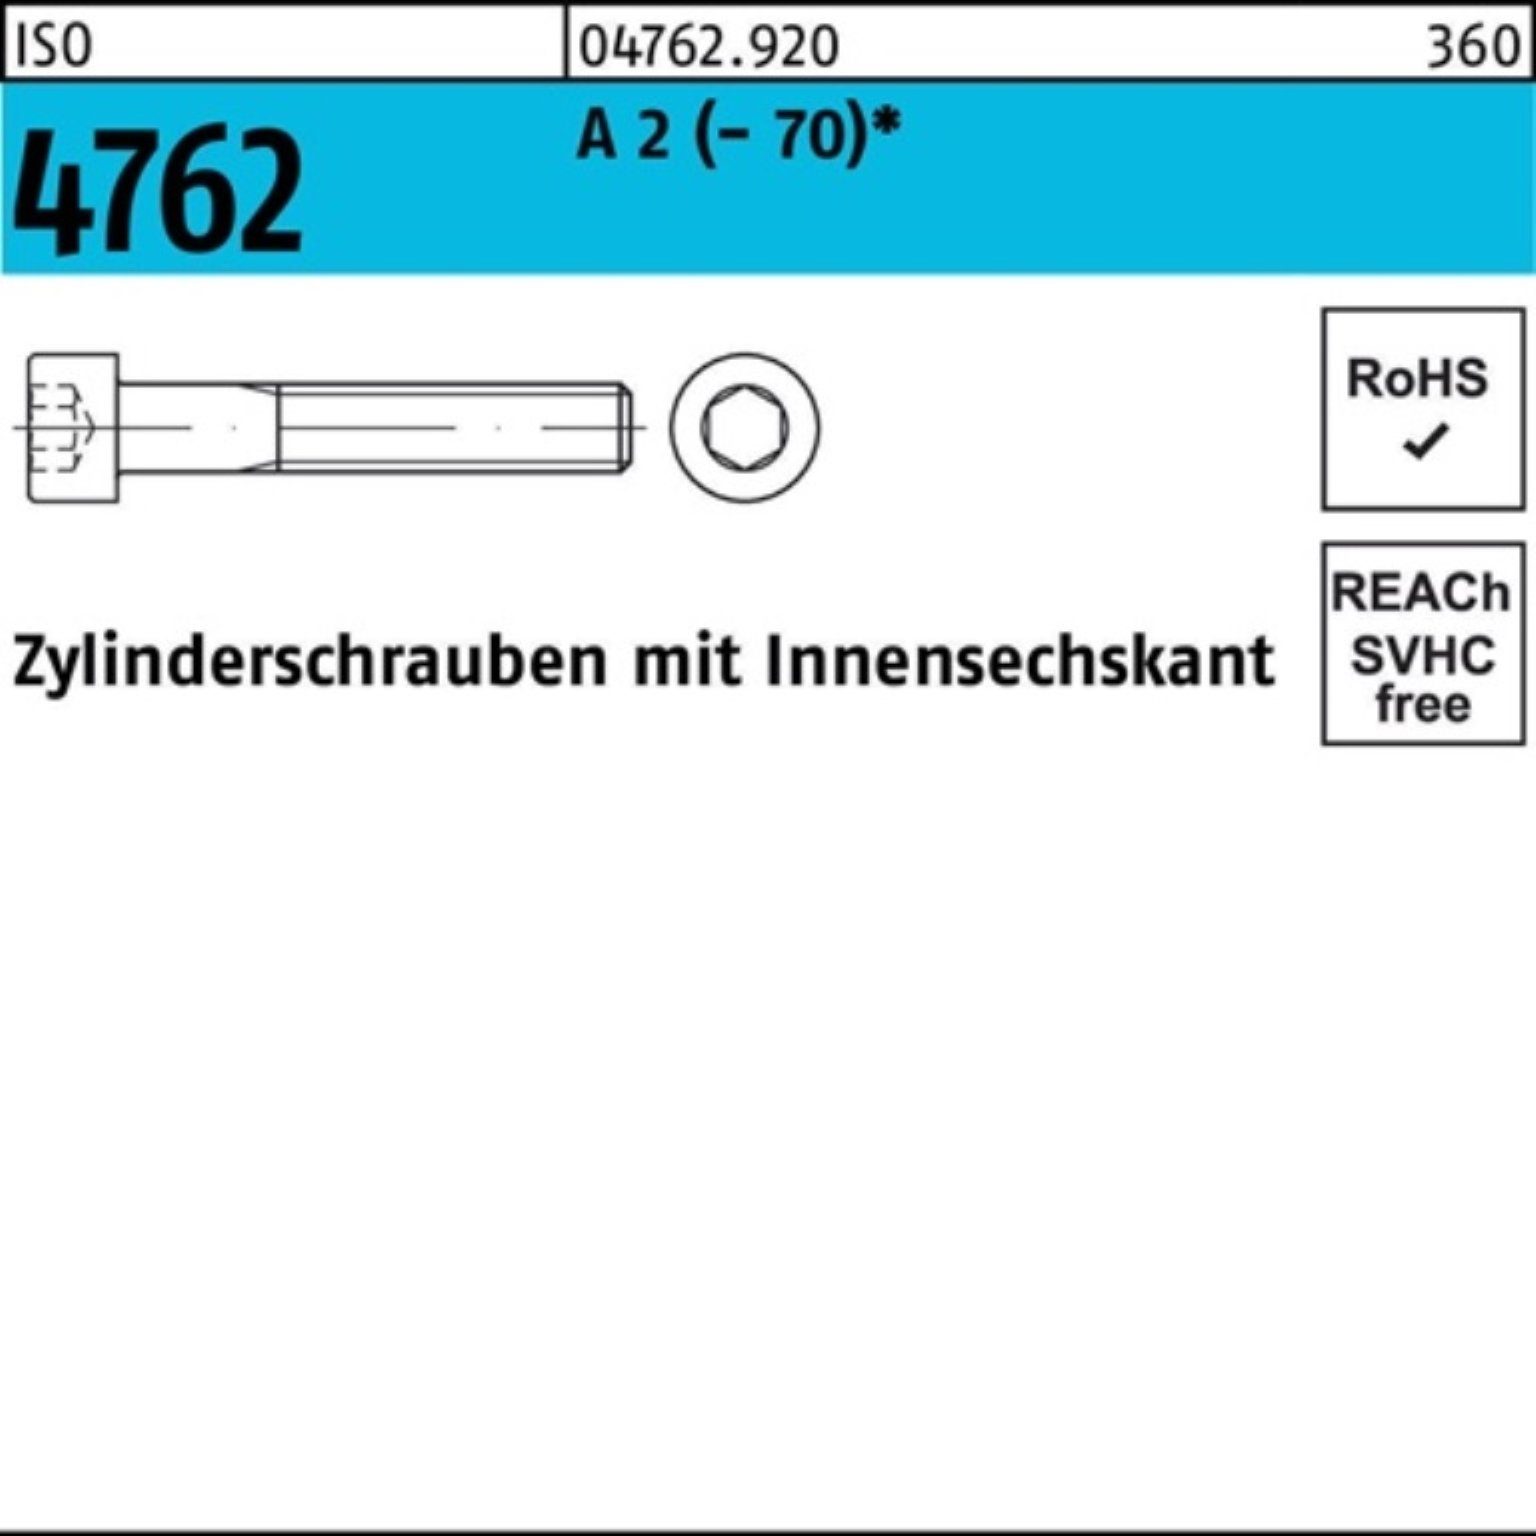 Innen-6kt A 2 Zylinderschraube Reyher Pack S 4762 200er Zylinderschraube ISO (70) 200 M8x 40